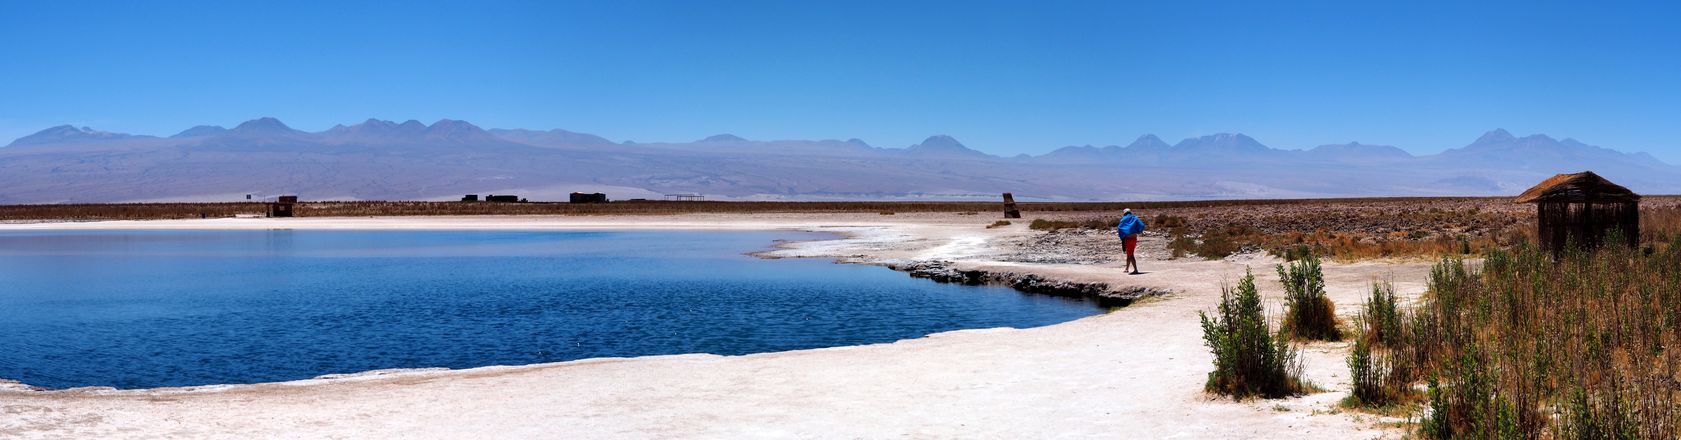 Laguna Piedra - désert d'Atacama